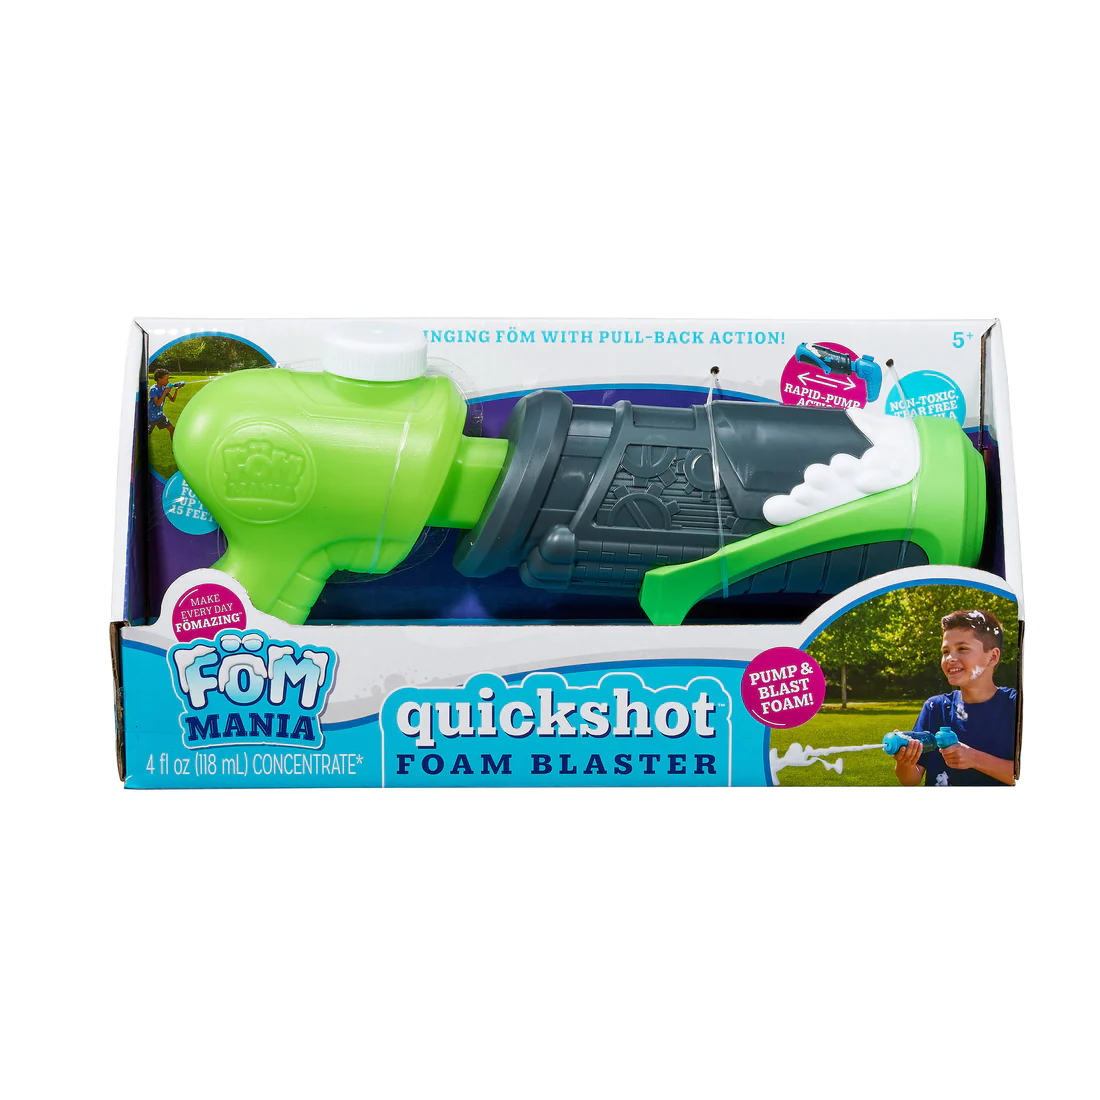 Quickshot Foam Blaster, Föm Mania